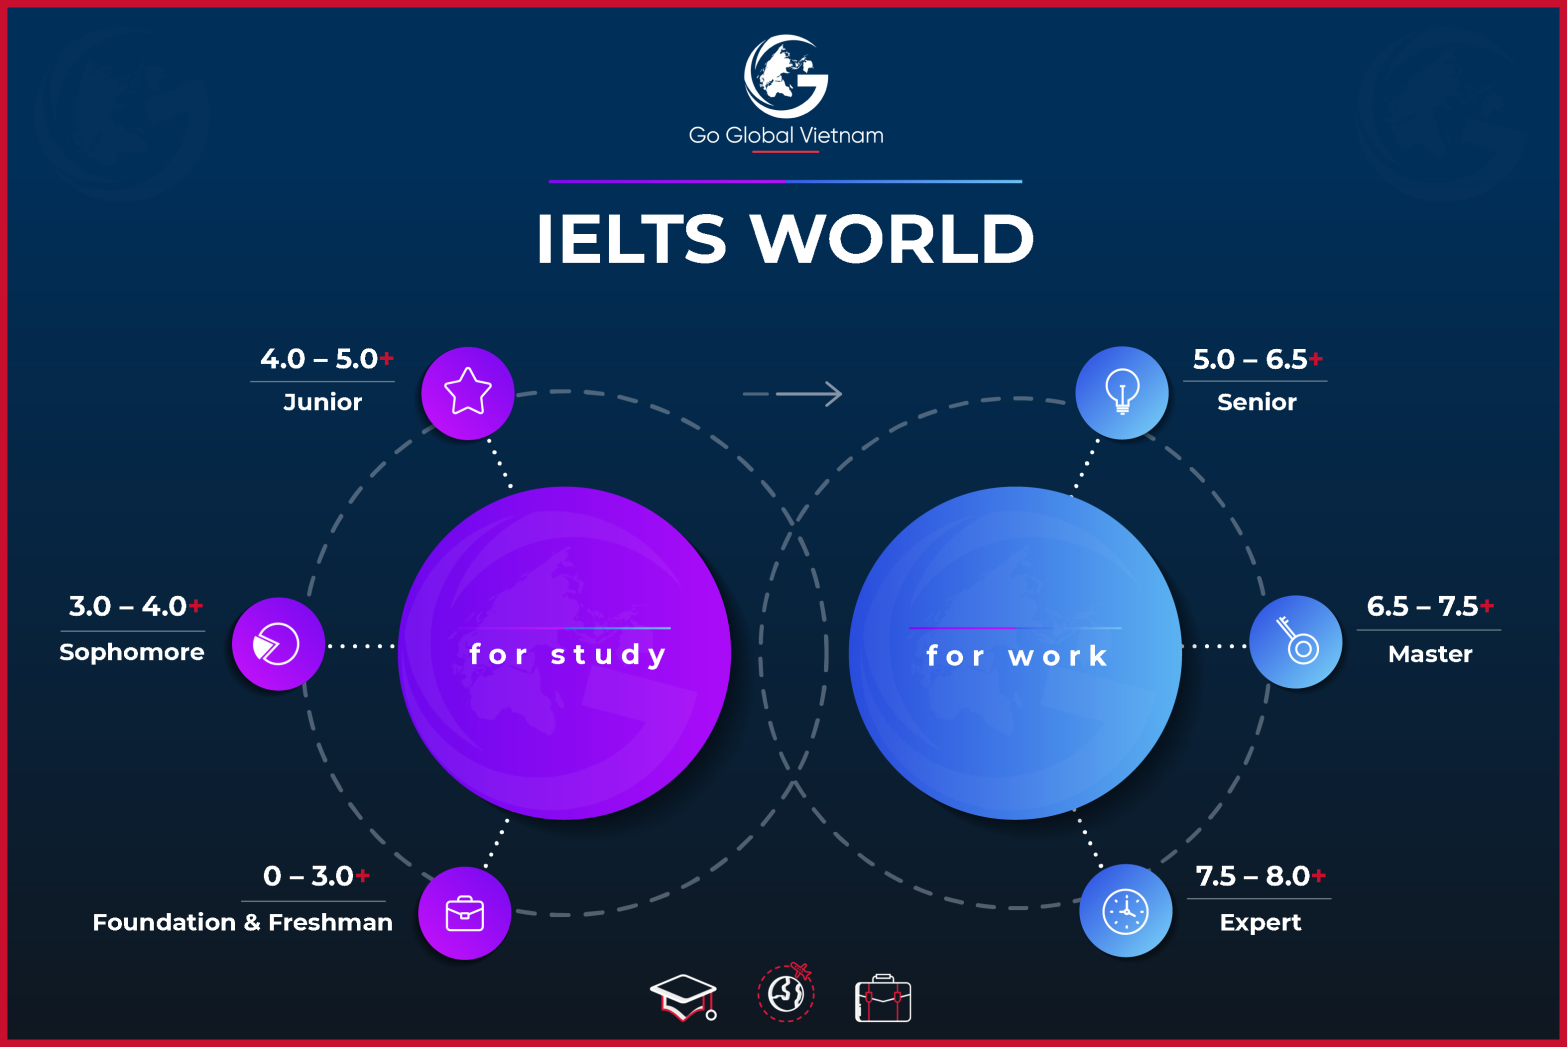 Lộ trình học tập IELTS cho những người mới mẻ chính thức – Bring VN To The World